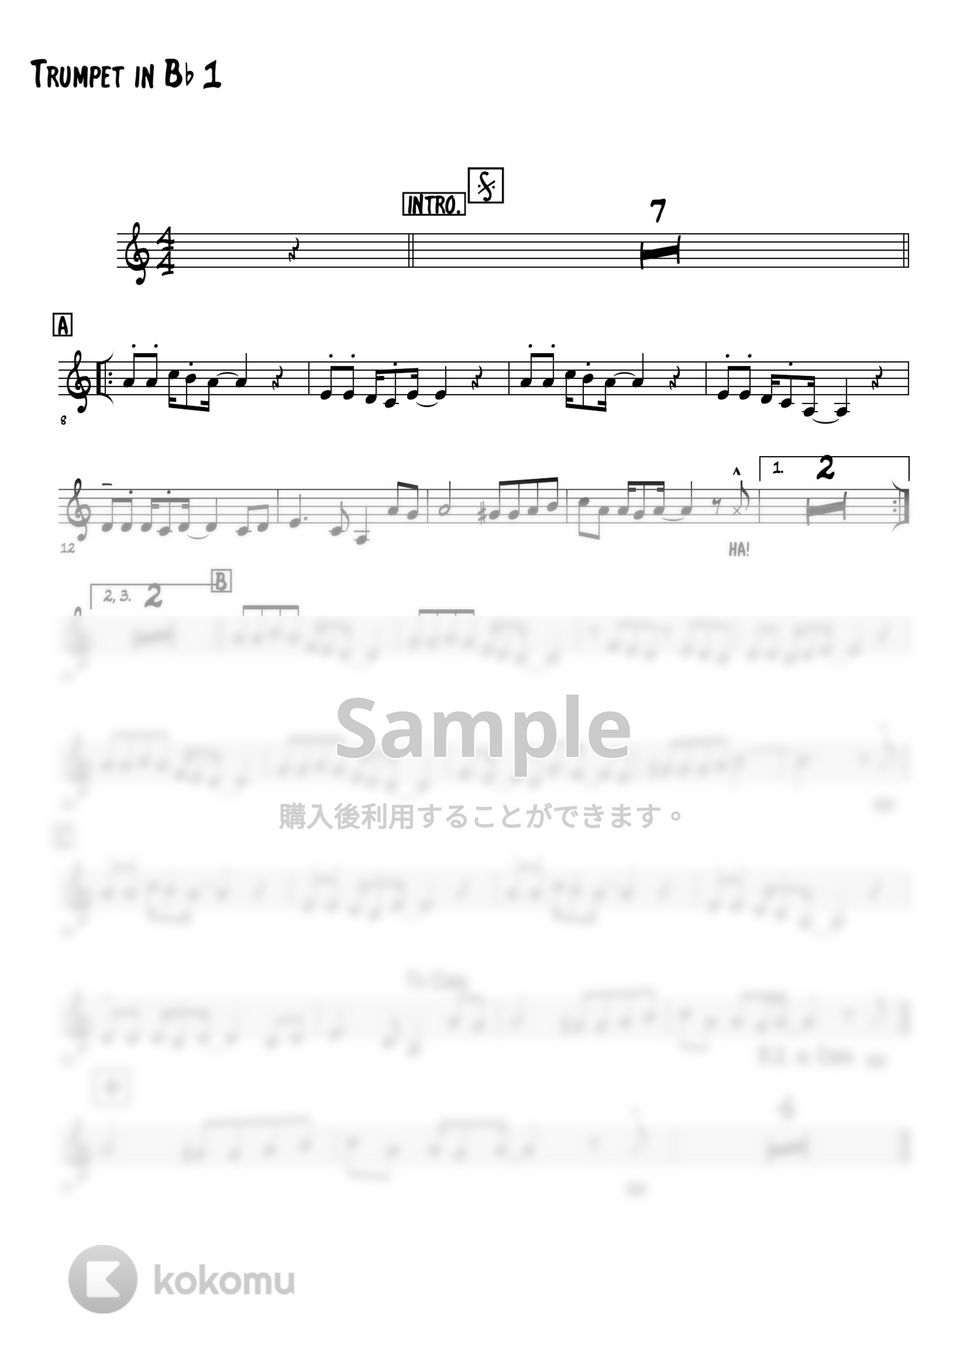 和田アキ子 - 古い日記 (トランペット4パート+Bass+Drums) by 高田将利